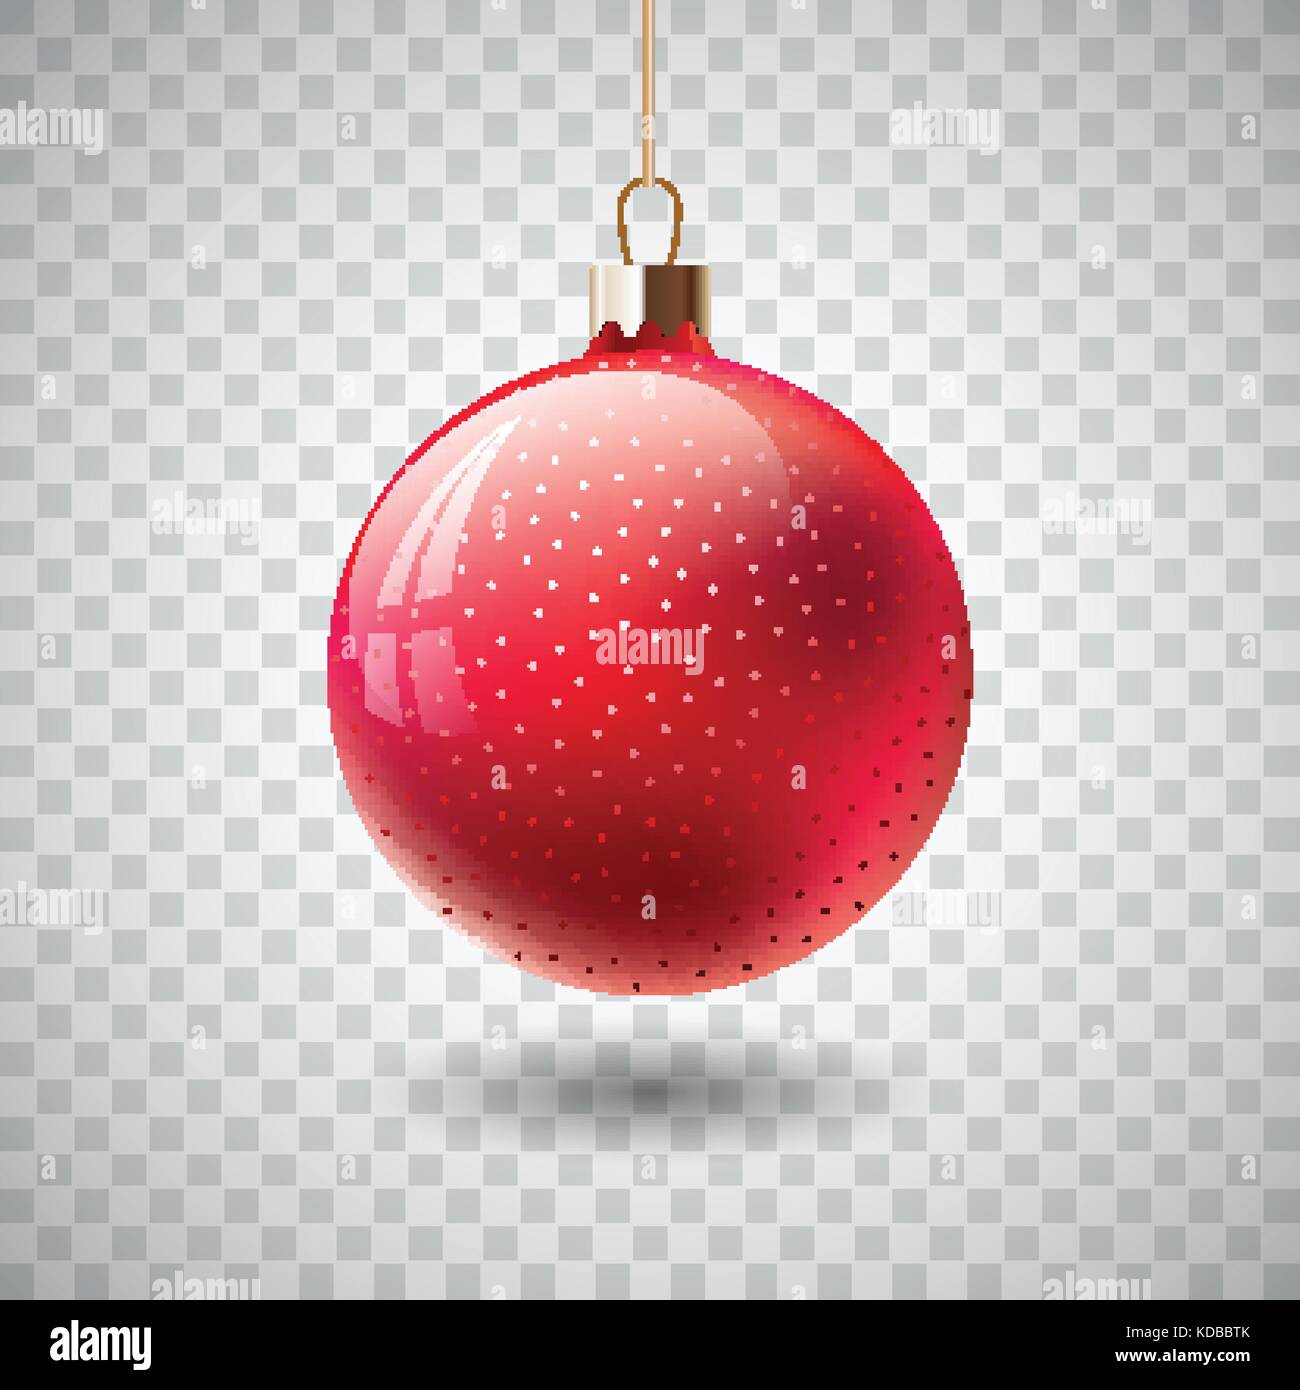 Foto Su Palla Di Natale.Rosso Isolato Palla Di Natale Su Sfondo Trasparente Illustrazione Vettoriale Immagine E Vettoriale Alamy